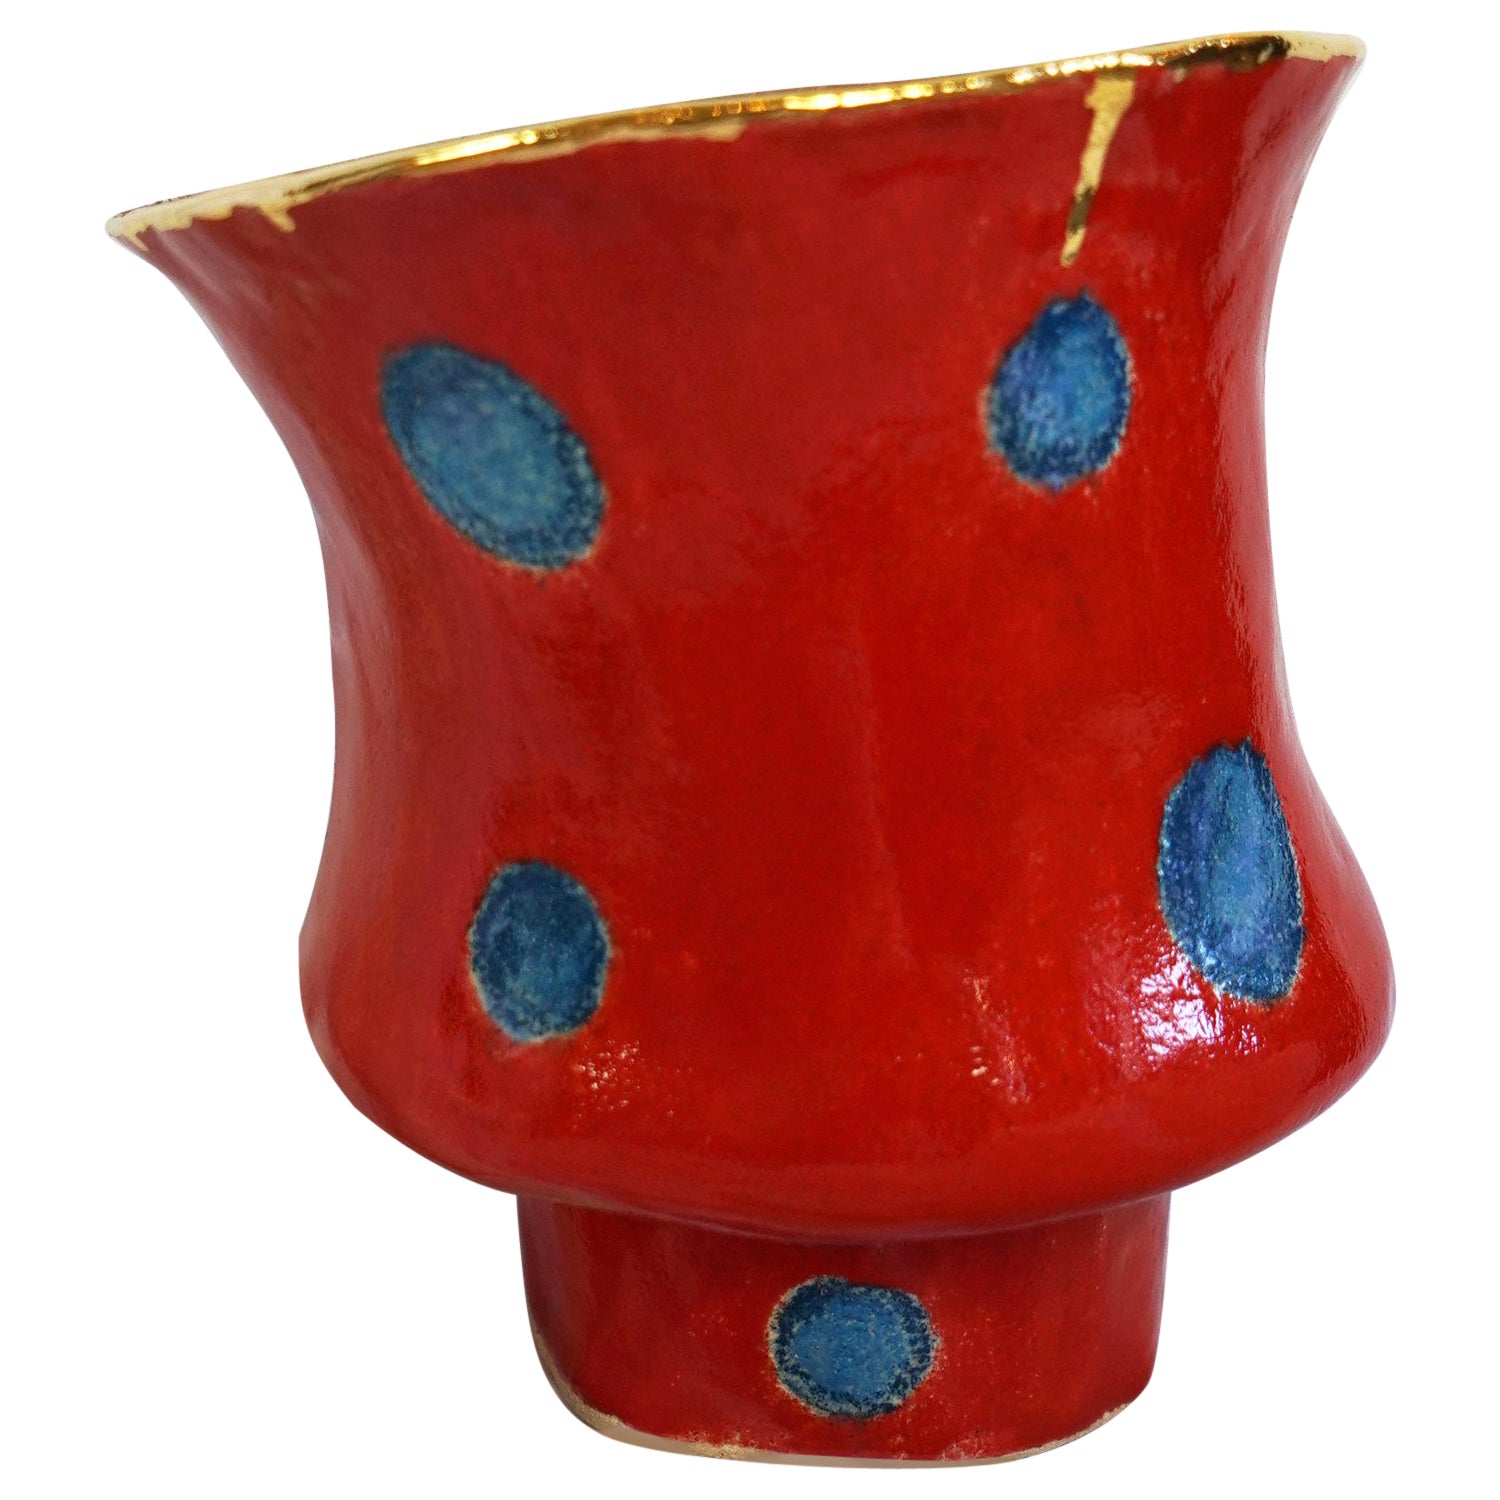 OLÉ Vase Nr. 5 von der Künstlerin und Designerin Hania Jneid